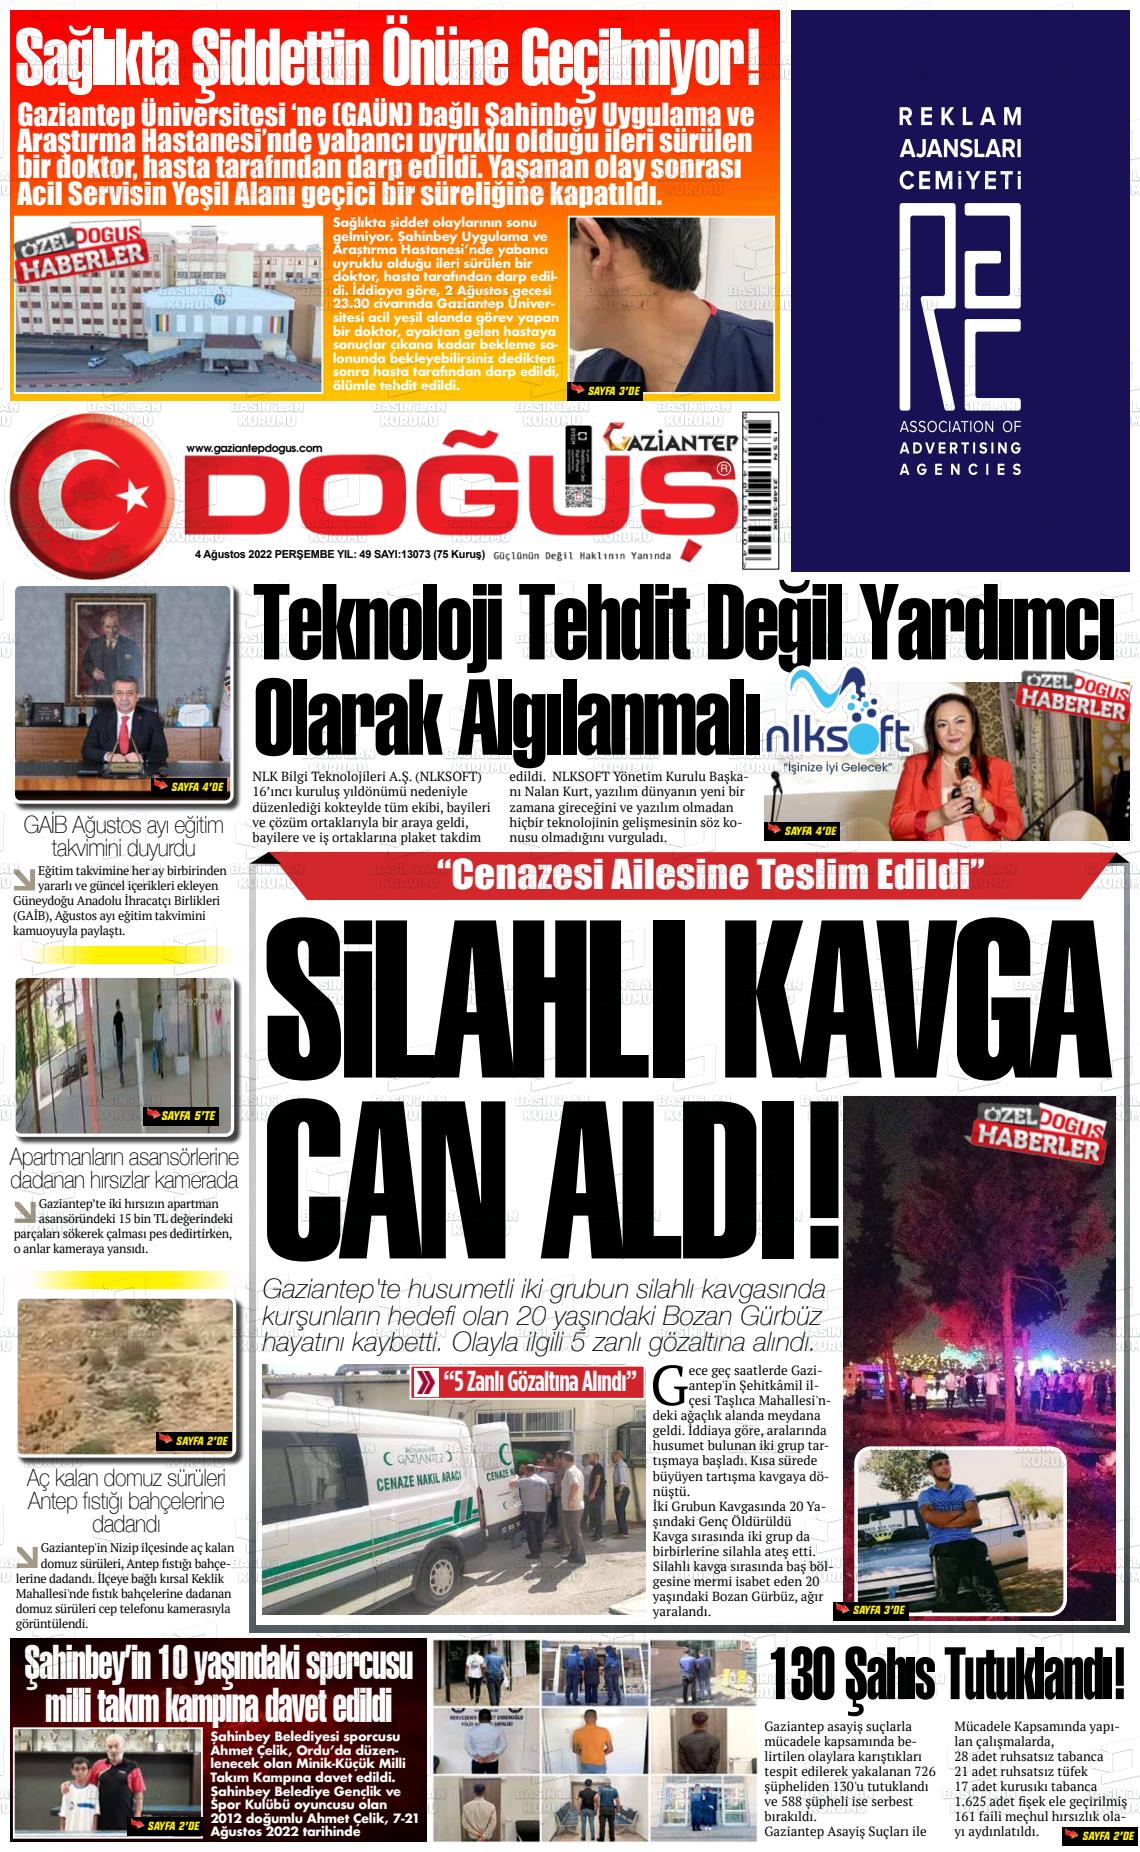 04 Ağustos 2022 Gaziantep Doğuş Gazete Manşeti